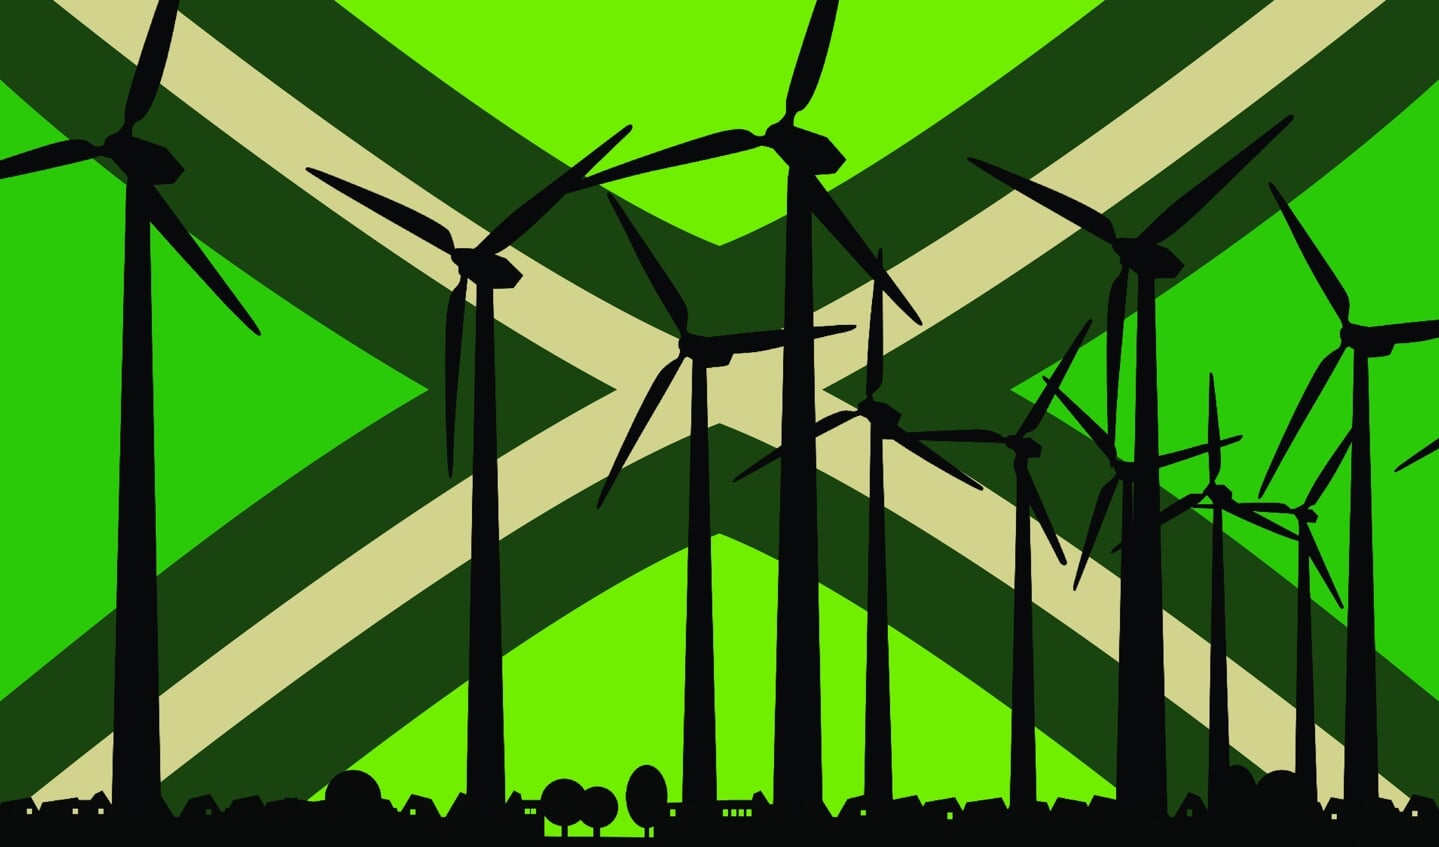 ‘De inwoners van Bronckhorst kozen overduidelijk voor een windmolenvrije leefomgeving’. Beeld: Actiecomité Op en Um ’t Hengelse Zand